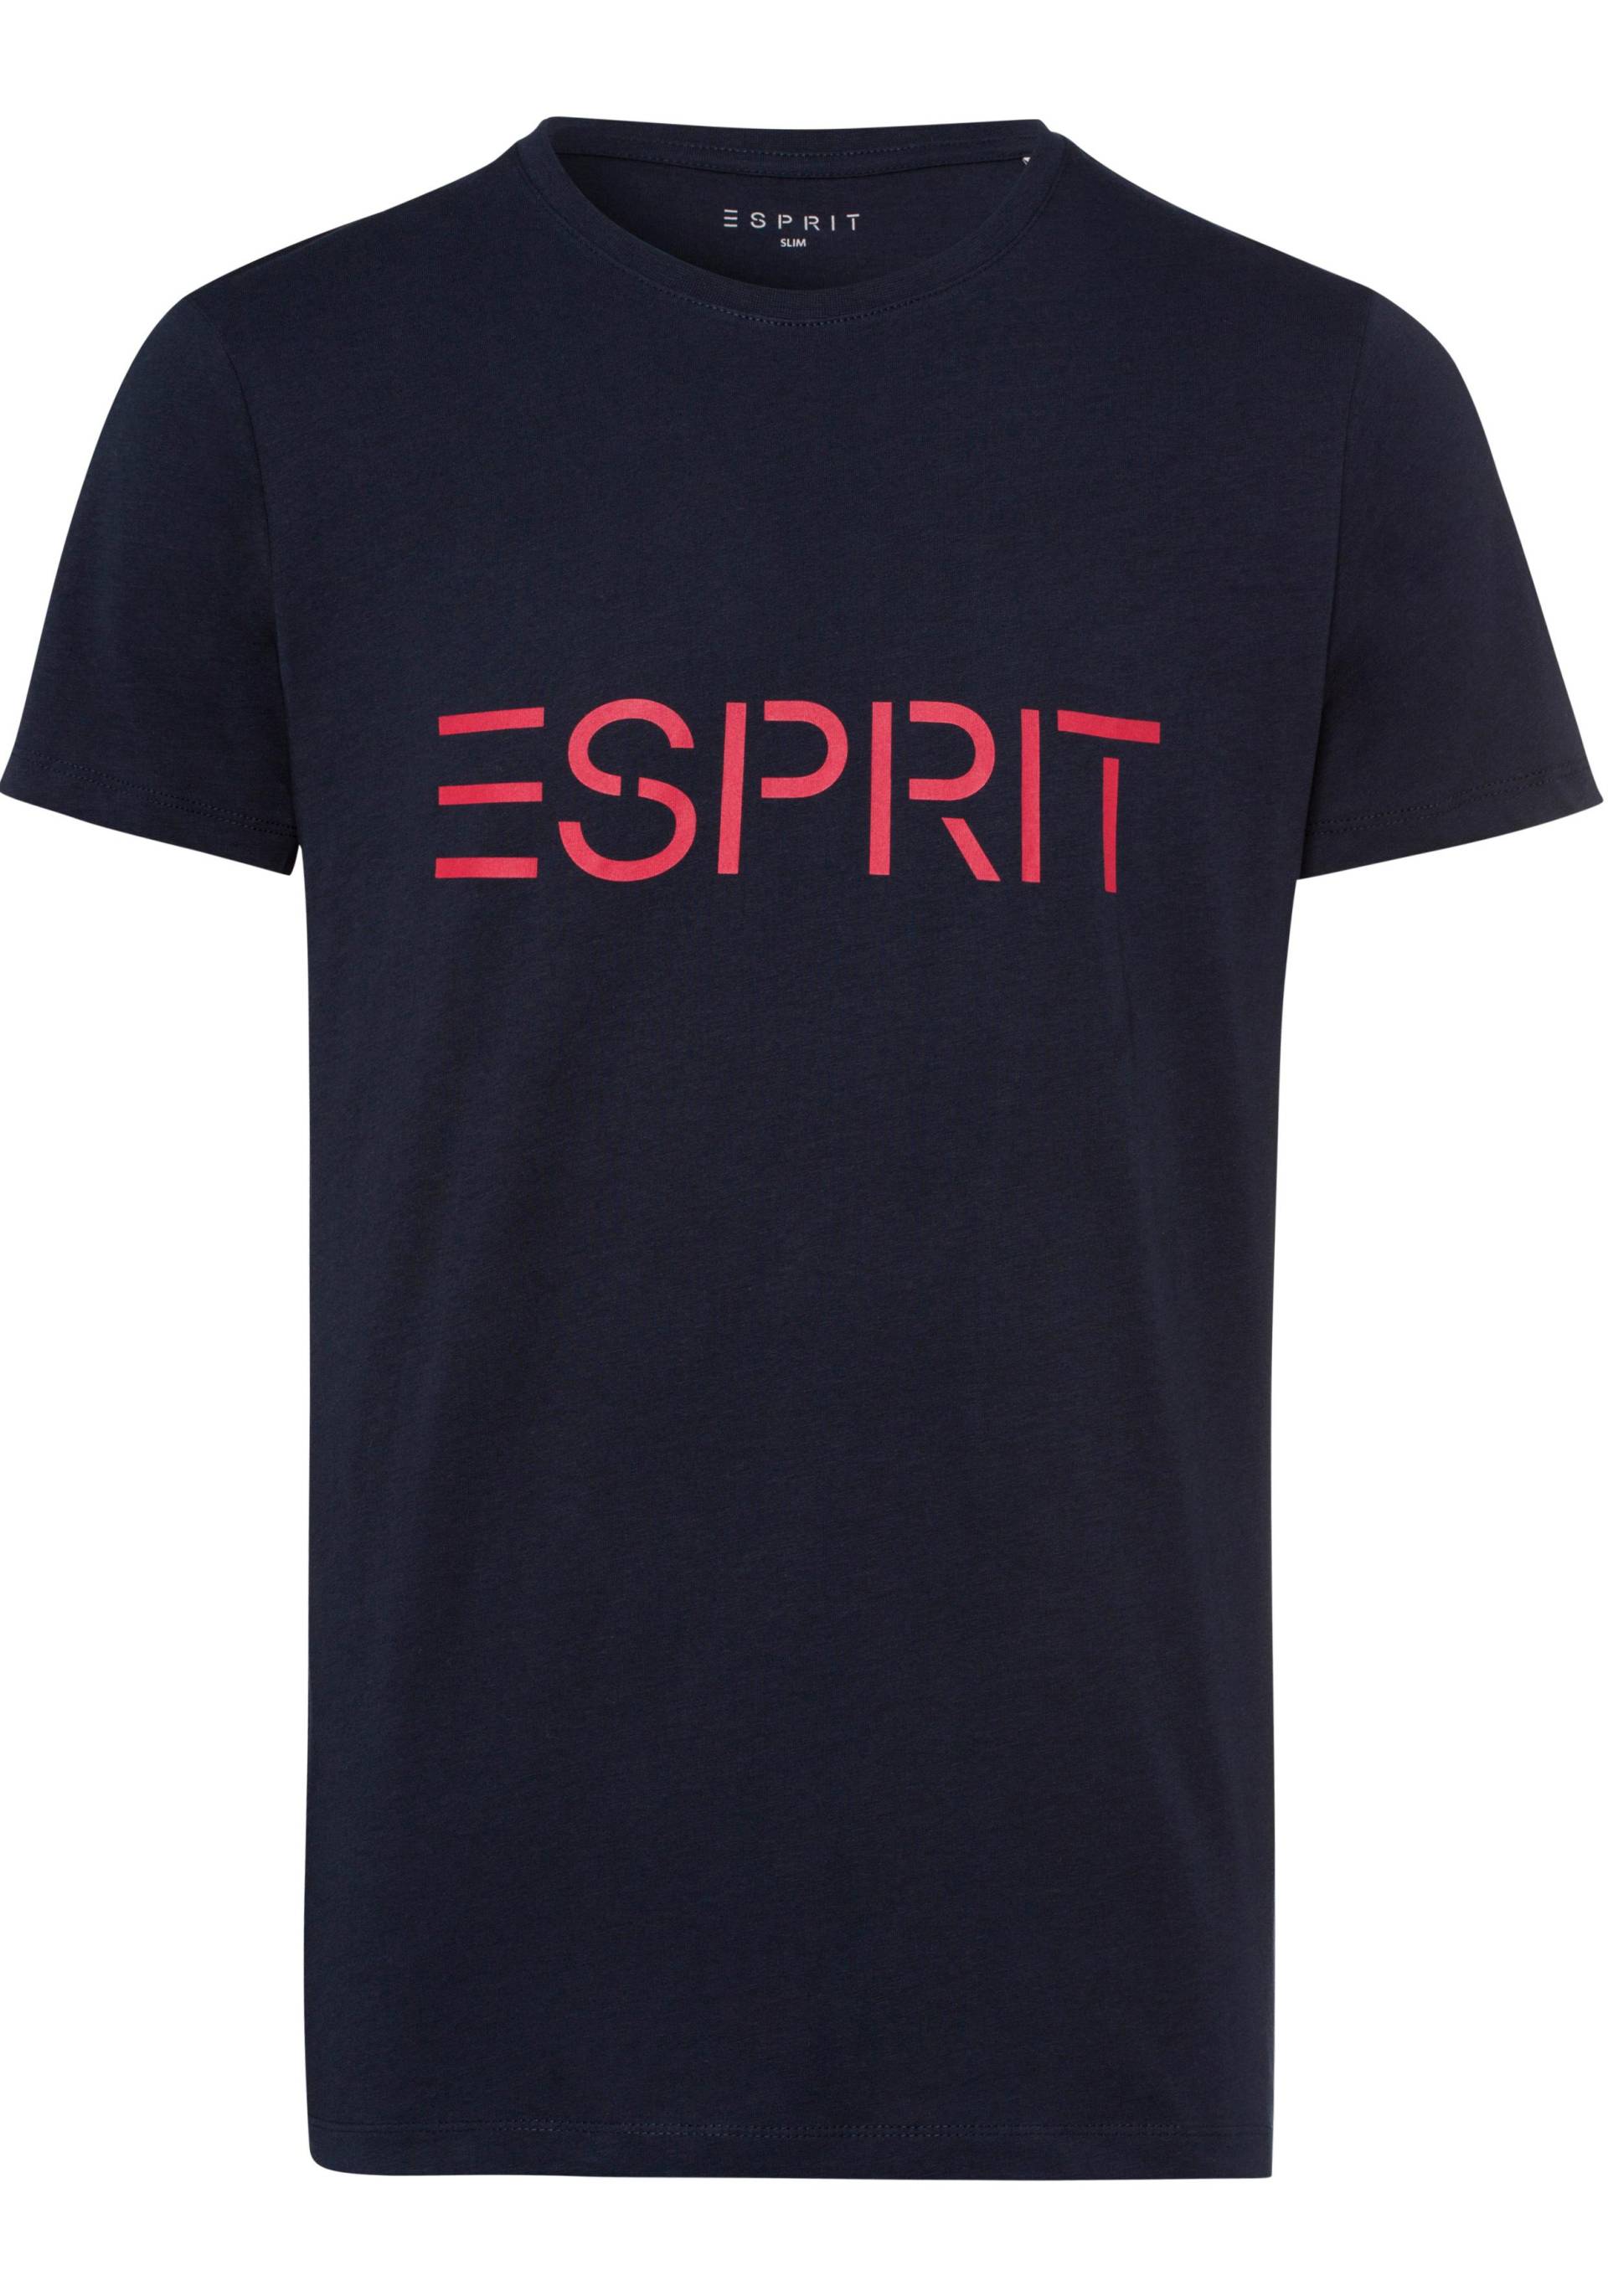 Esprit T-Shirt, mit grossem Labelprint vorn von Esprit